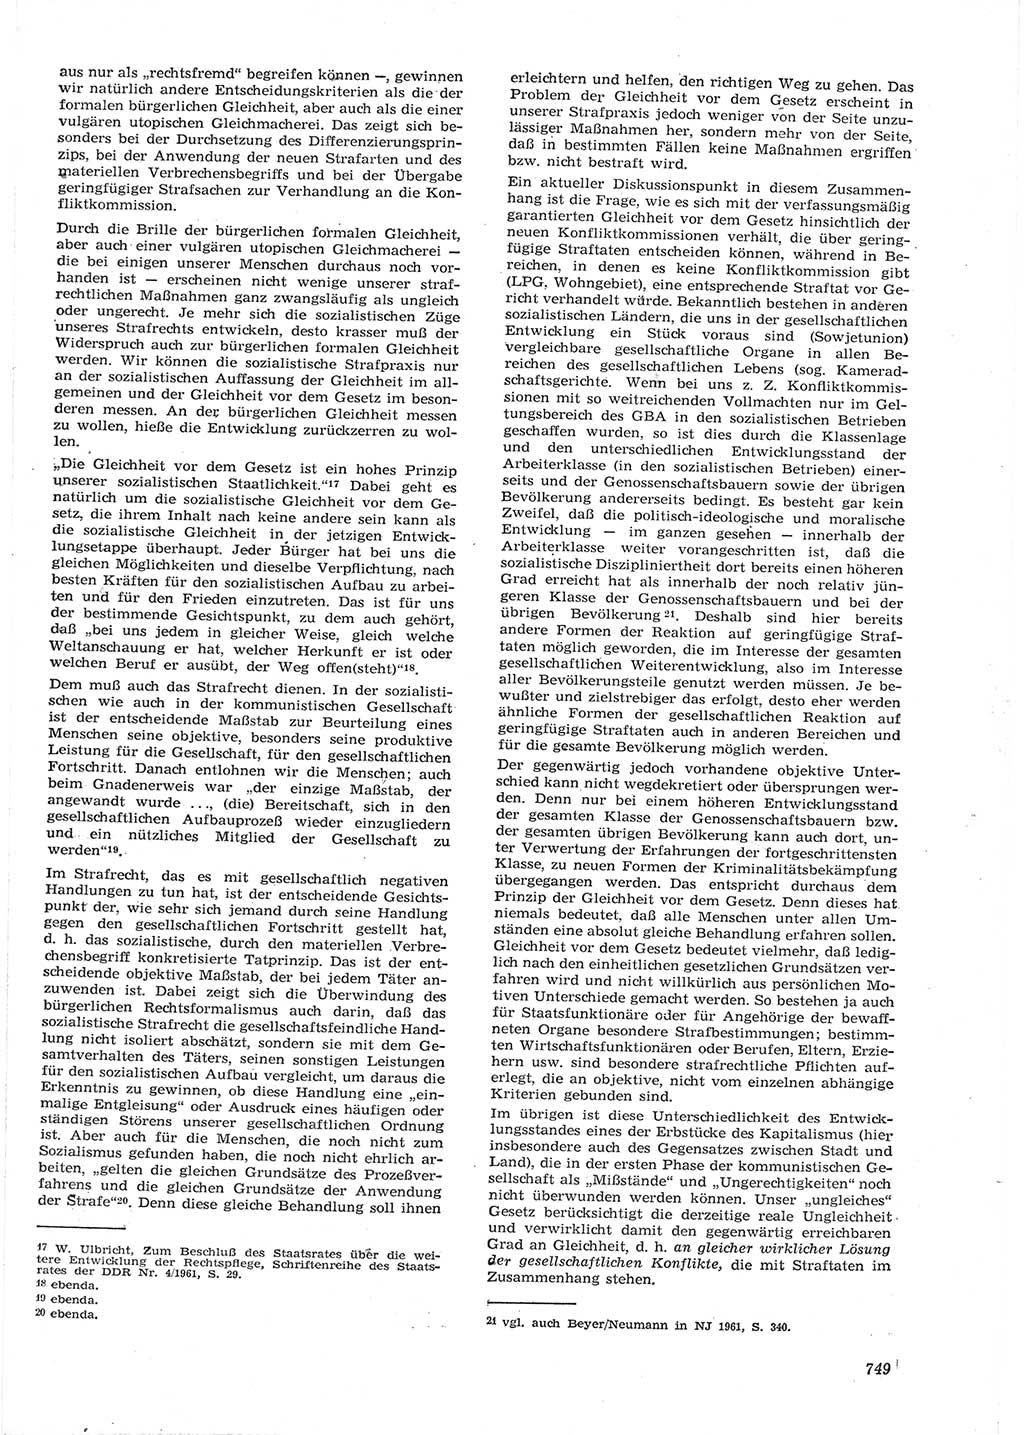 Neue Justiz (NJ), Zeitschrift für Recht und Rechtswissenschaft [Deutsche Demokratische Republik (DDR)], 15. Jahrgang 1961, Seite 749 (NJ DDR 1961, S. 749)